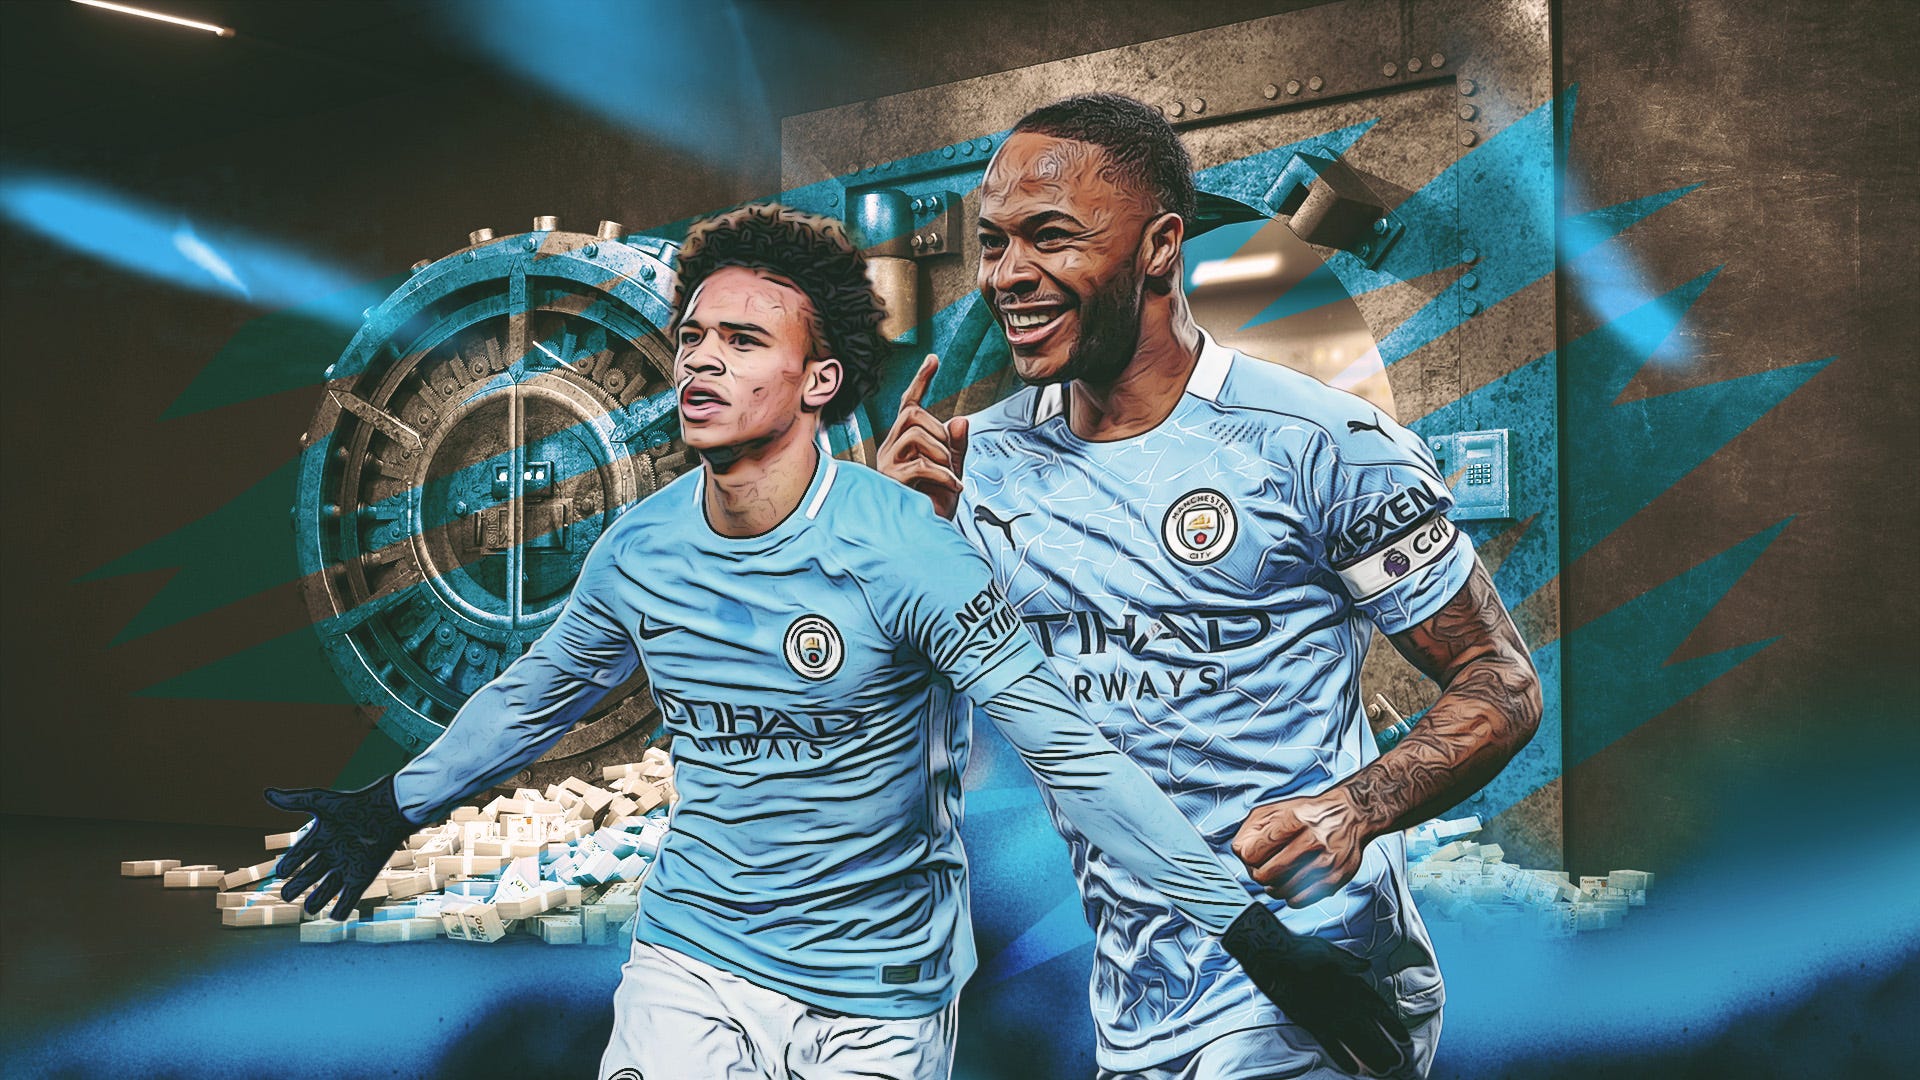 Top những hình ảnh hình nền Manchester City đẹp nhất full HD  VFOVN